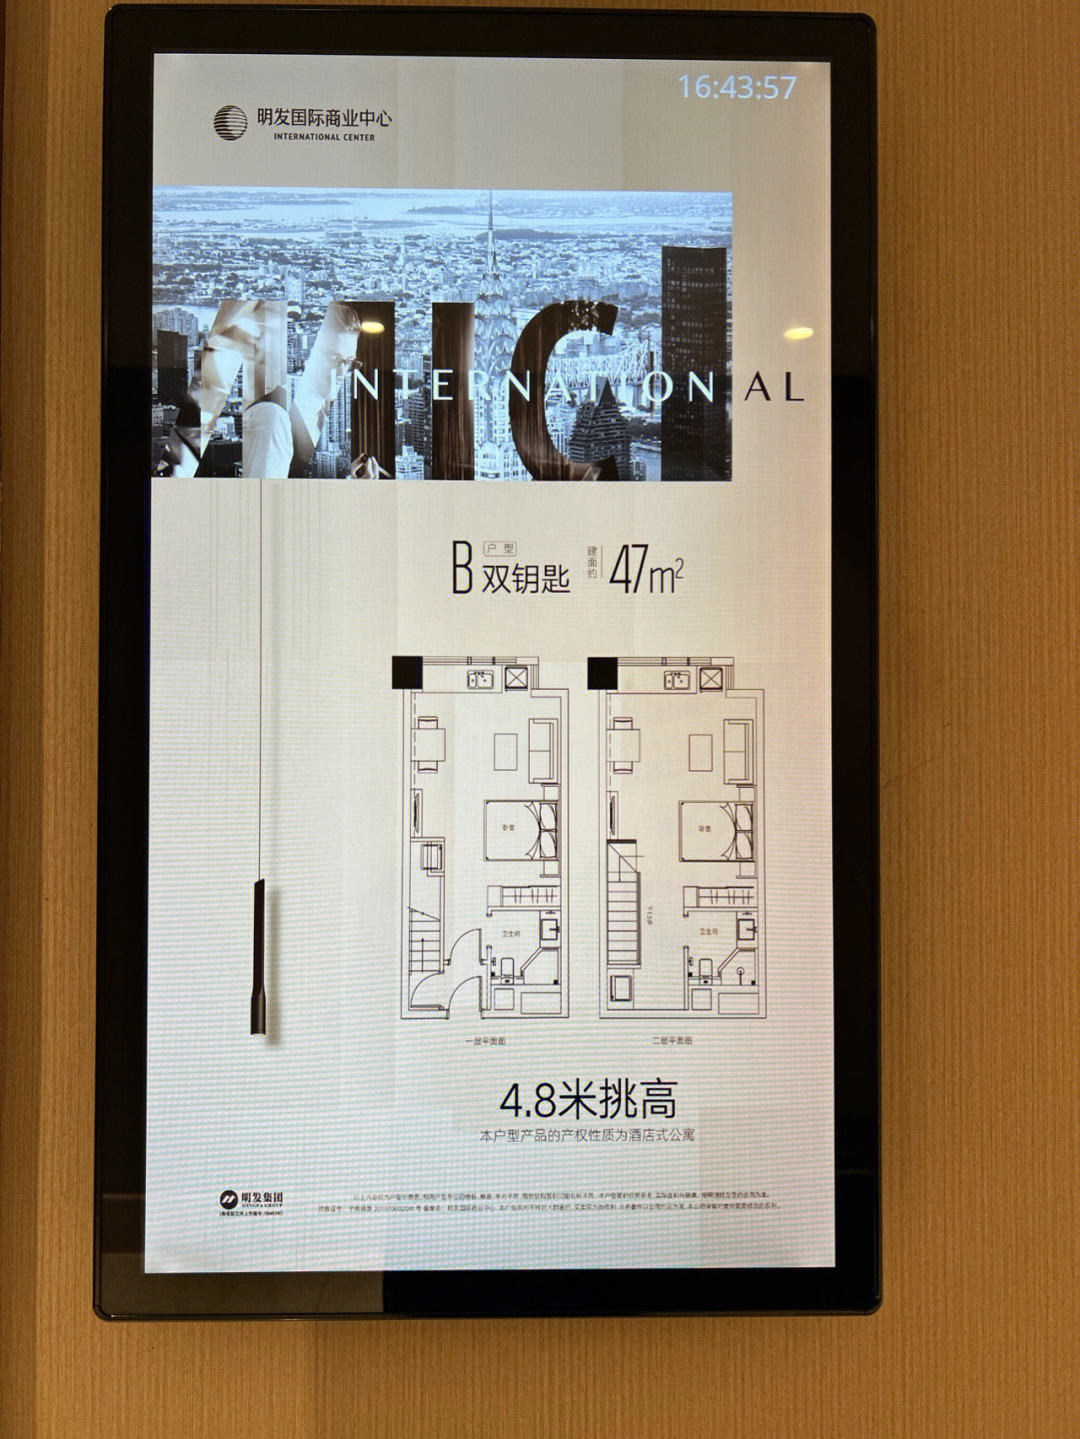 江北核心区研创园板块明发国际中心公寓